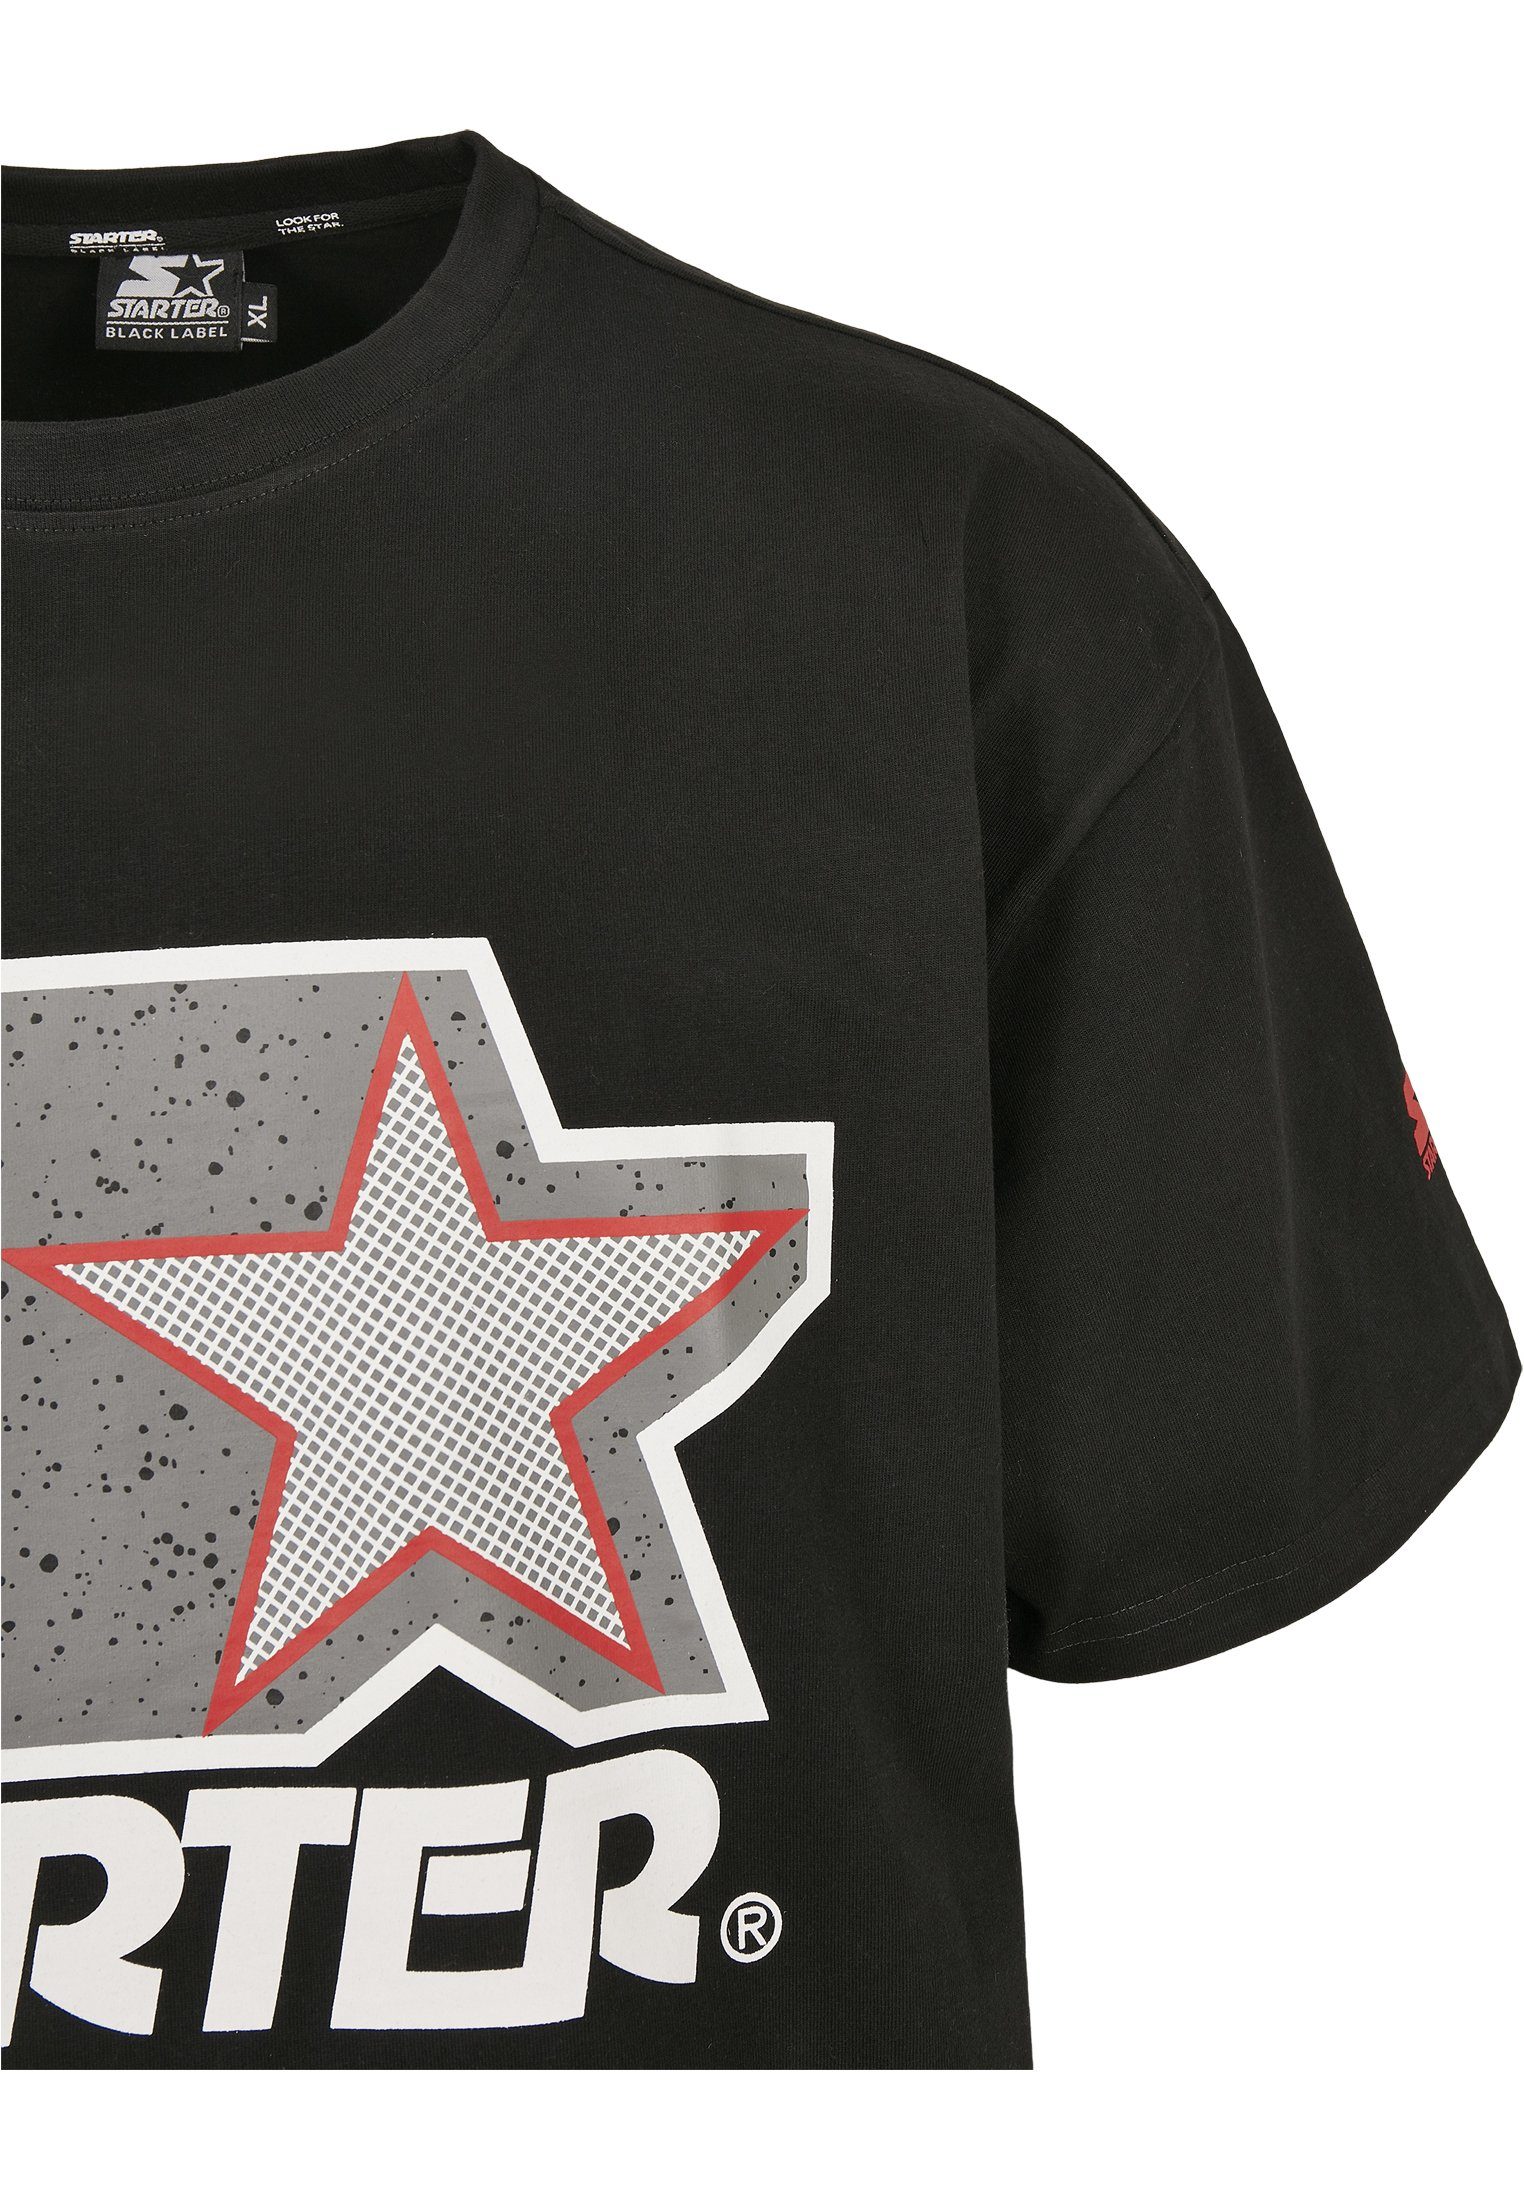 Tee Logo Starter black/grey Multicolored Starter T-Shirt Herren (1-tlg)